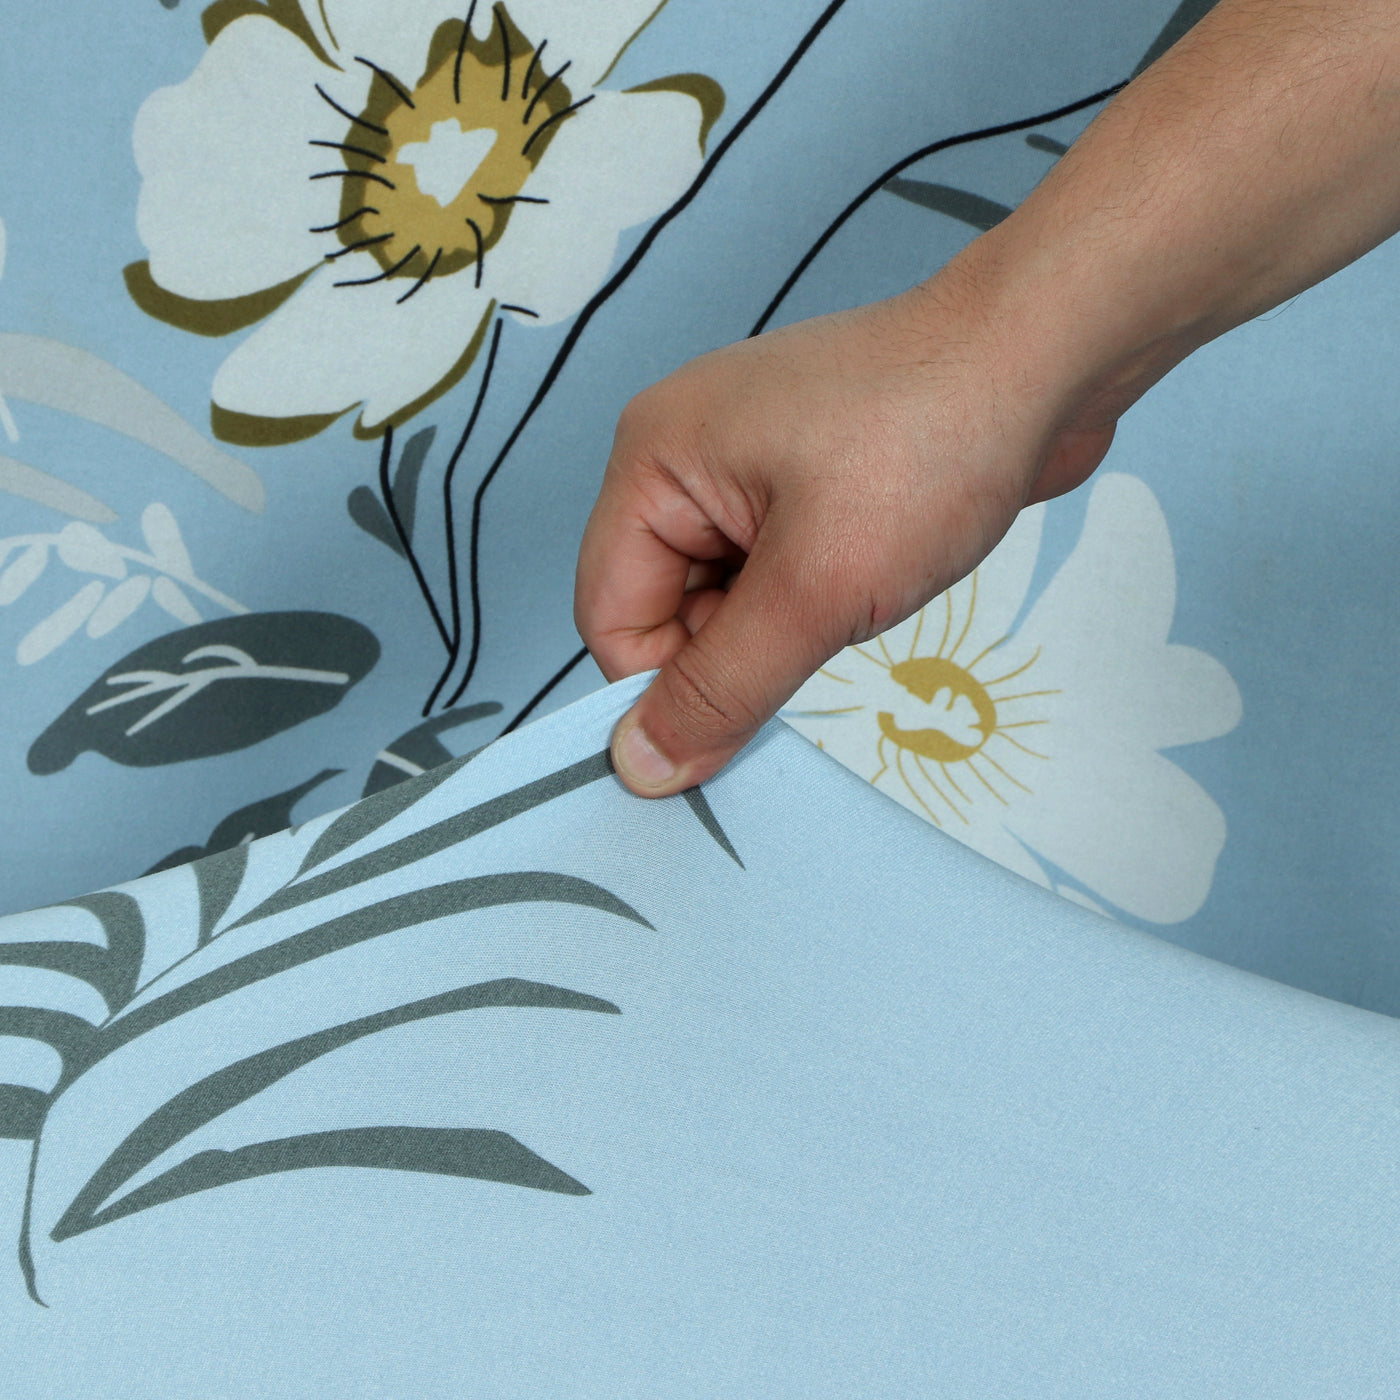 Printed Sofa Cover - Sky Blue Flower